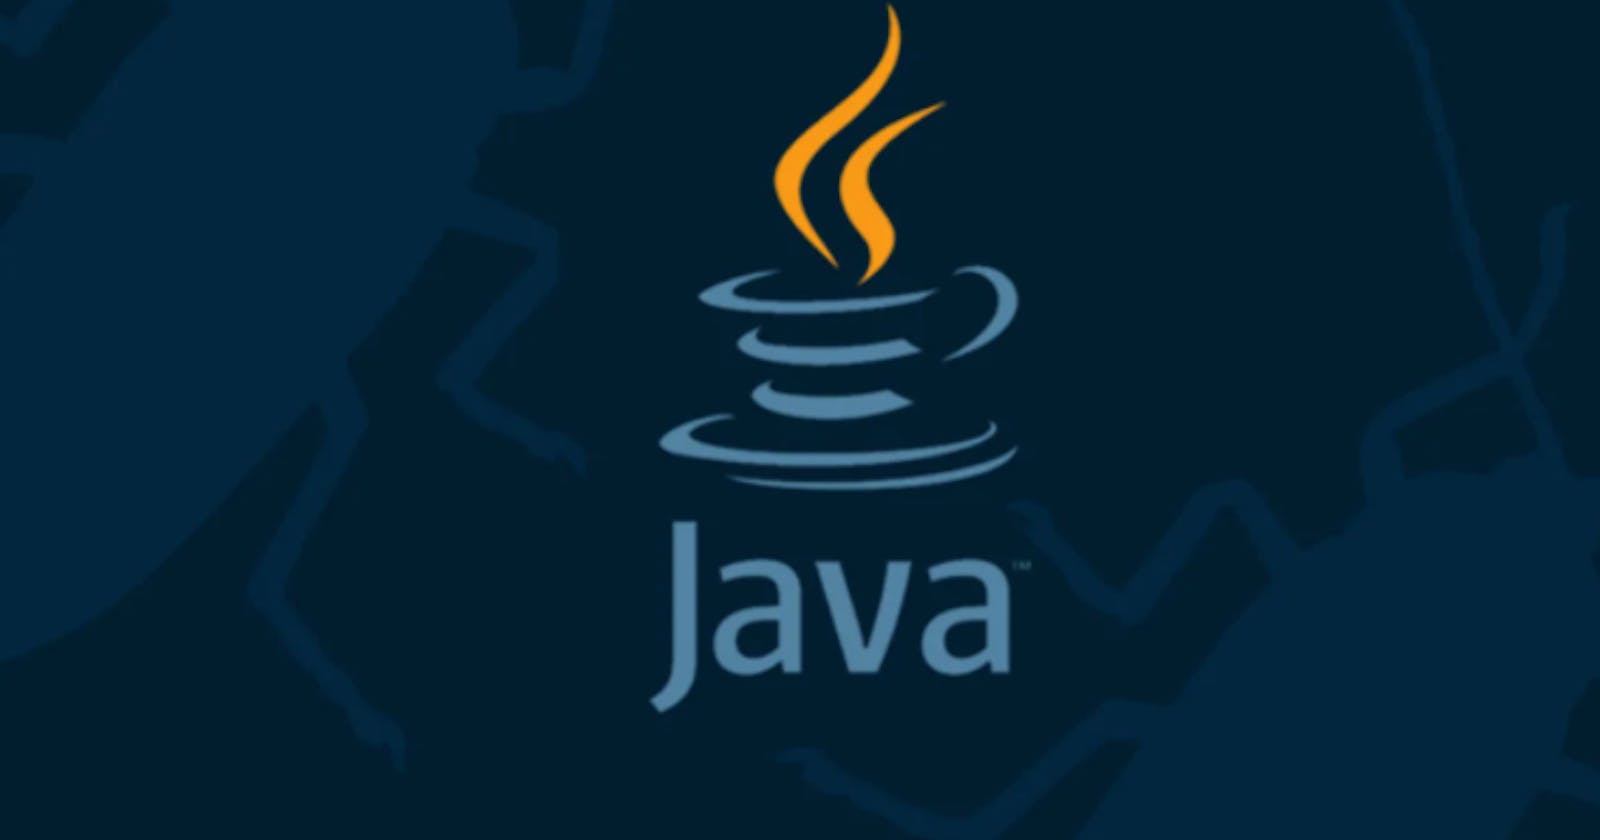 Basics of Java